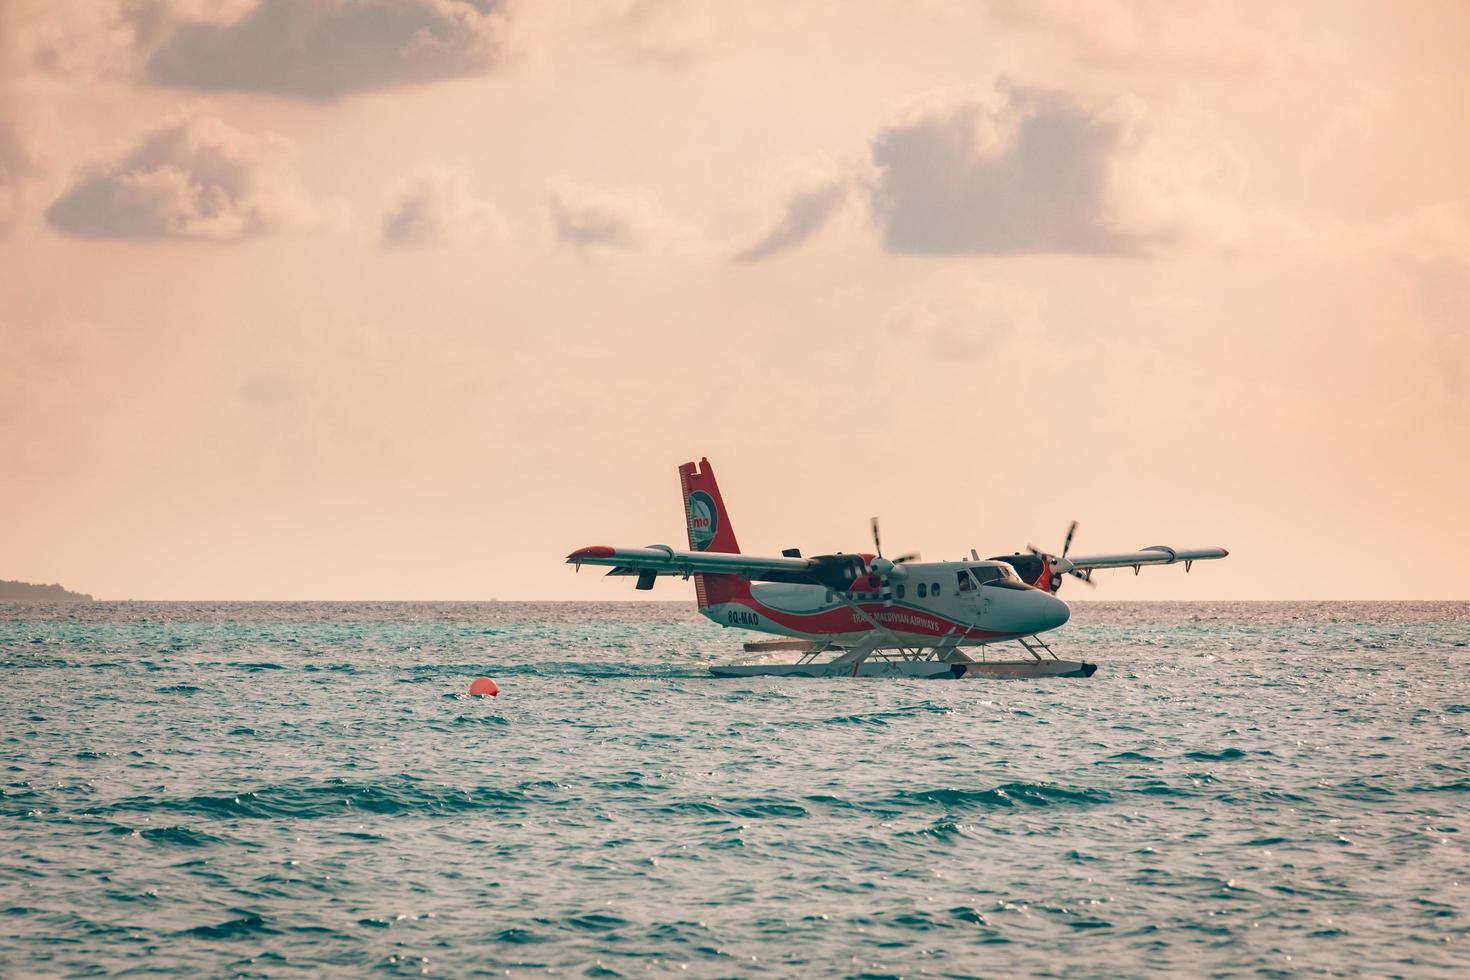 08.09.2019 - ari atoll, maldiverna exotisk scen med sjöflygplan på maldiverna hav landning. sjöflygplan taxi på solnedgång hav innan ta av. semester eller Semester i maldiverna begrepp bakgrund. luft transport foto